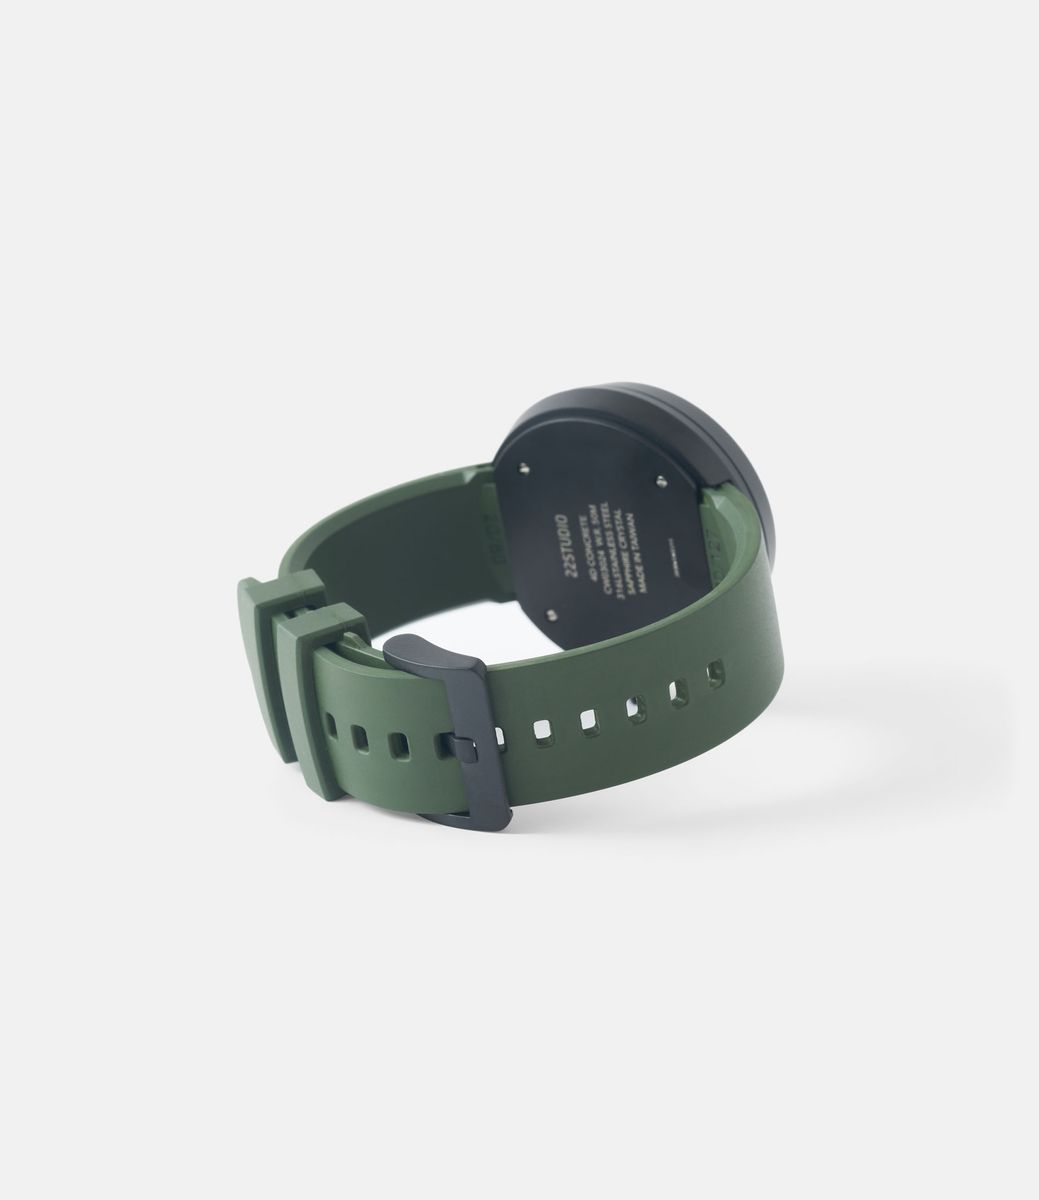 22 Studio 4D Watch Moss Green — часы с циферблатом из бетона (44 мм)